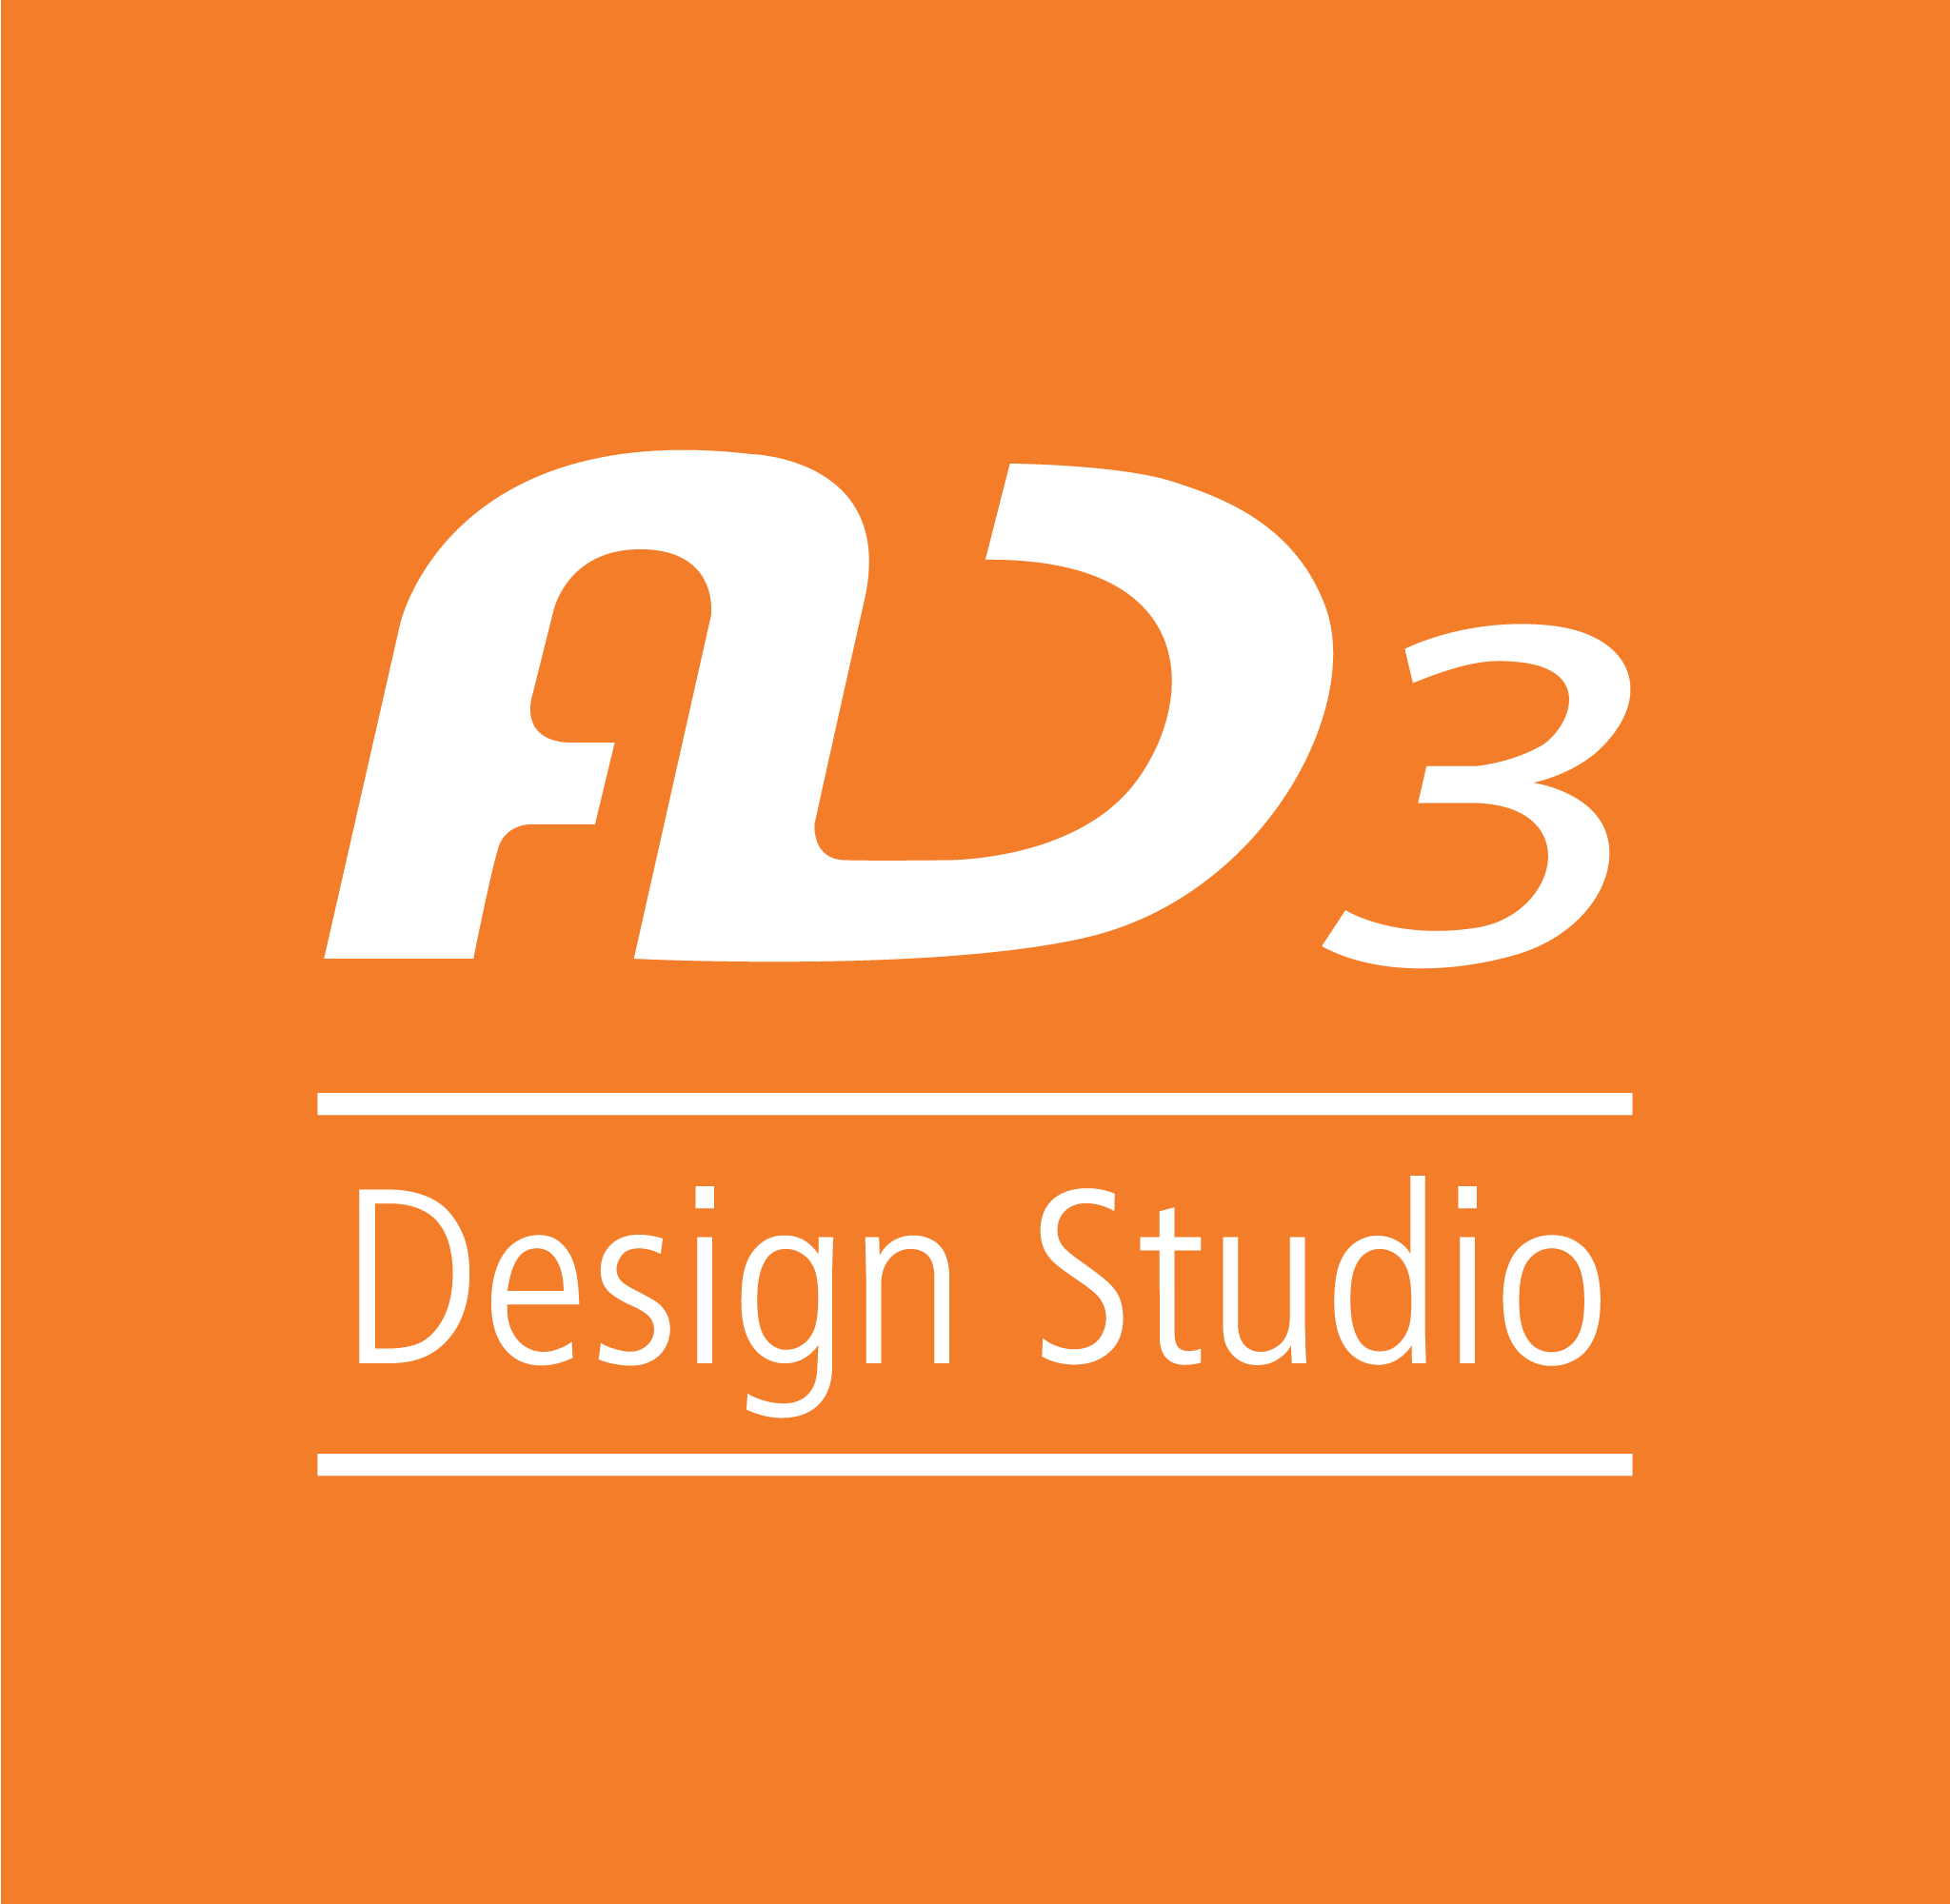 AD3 – Design